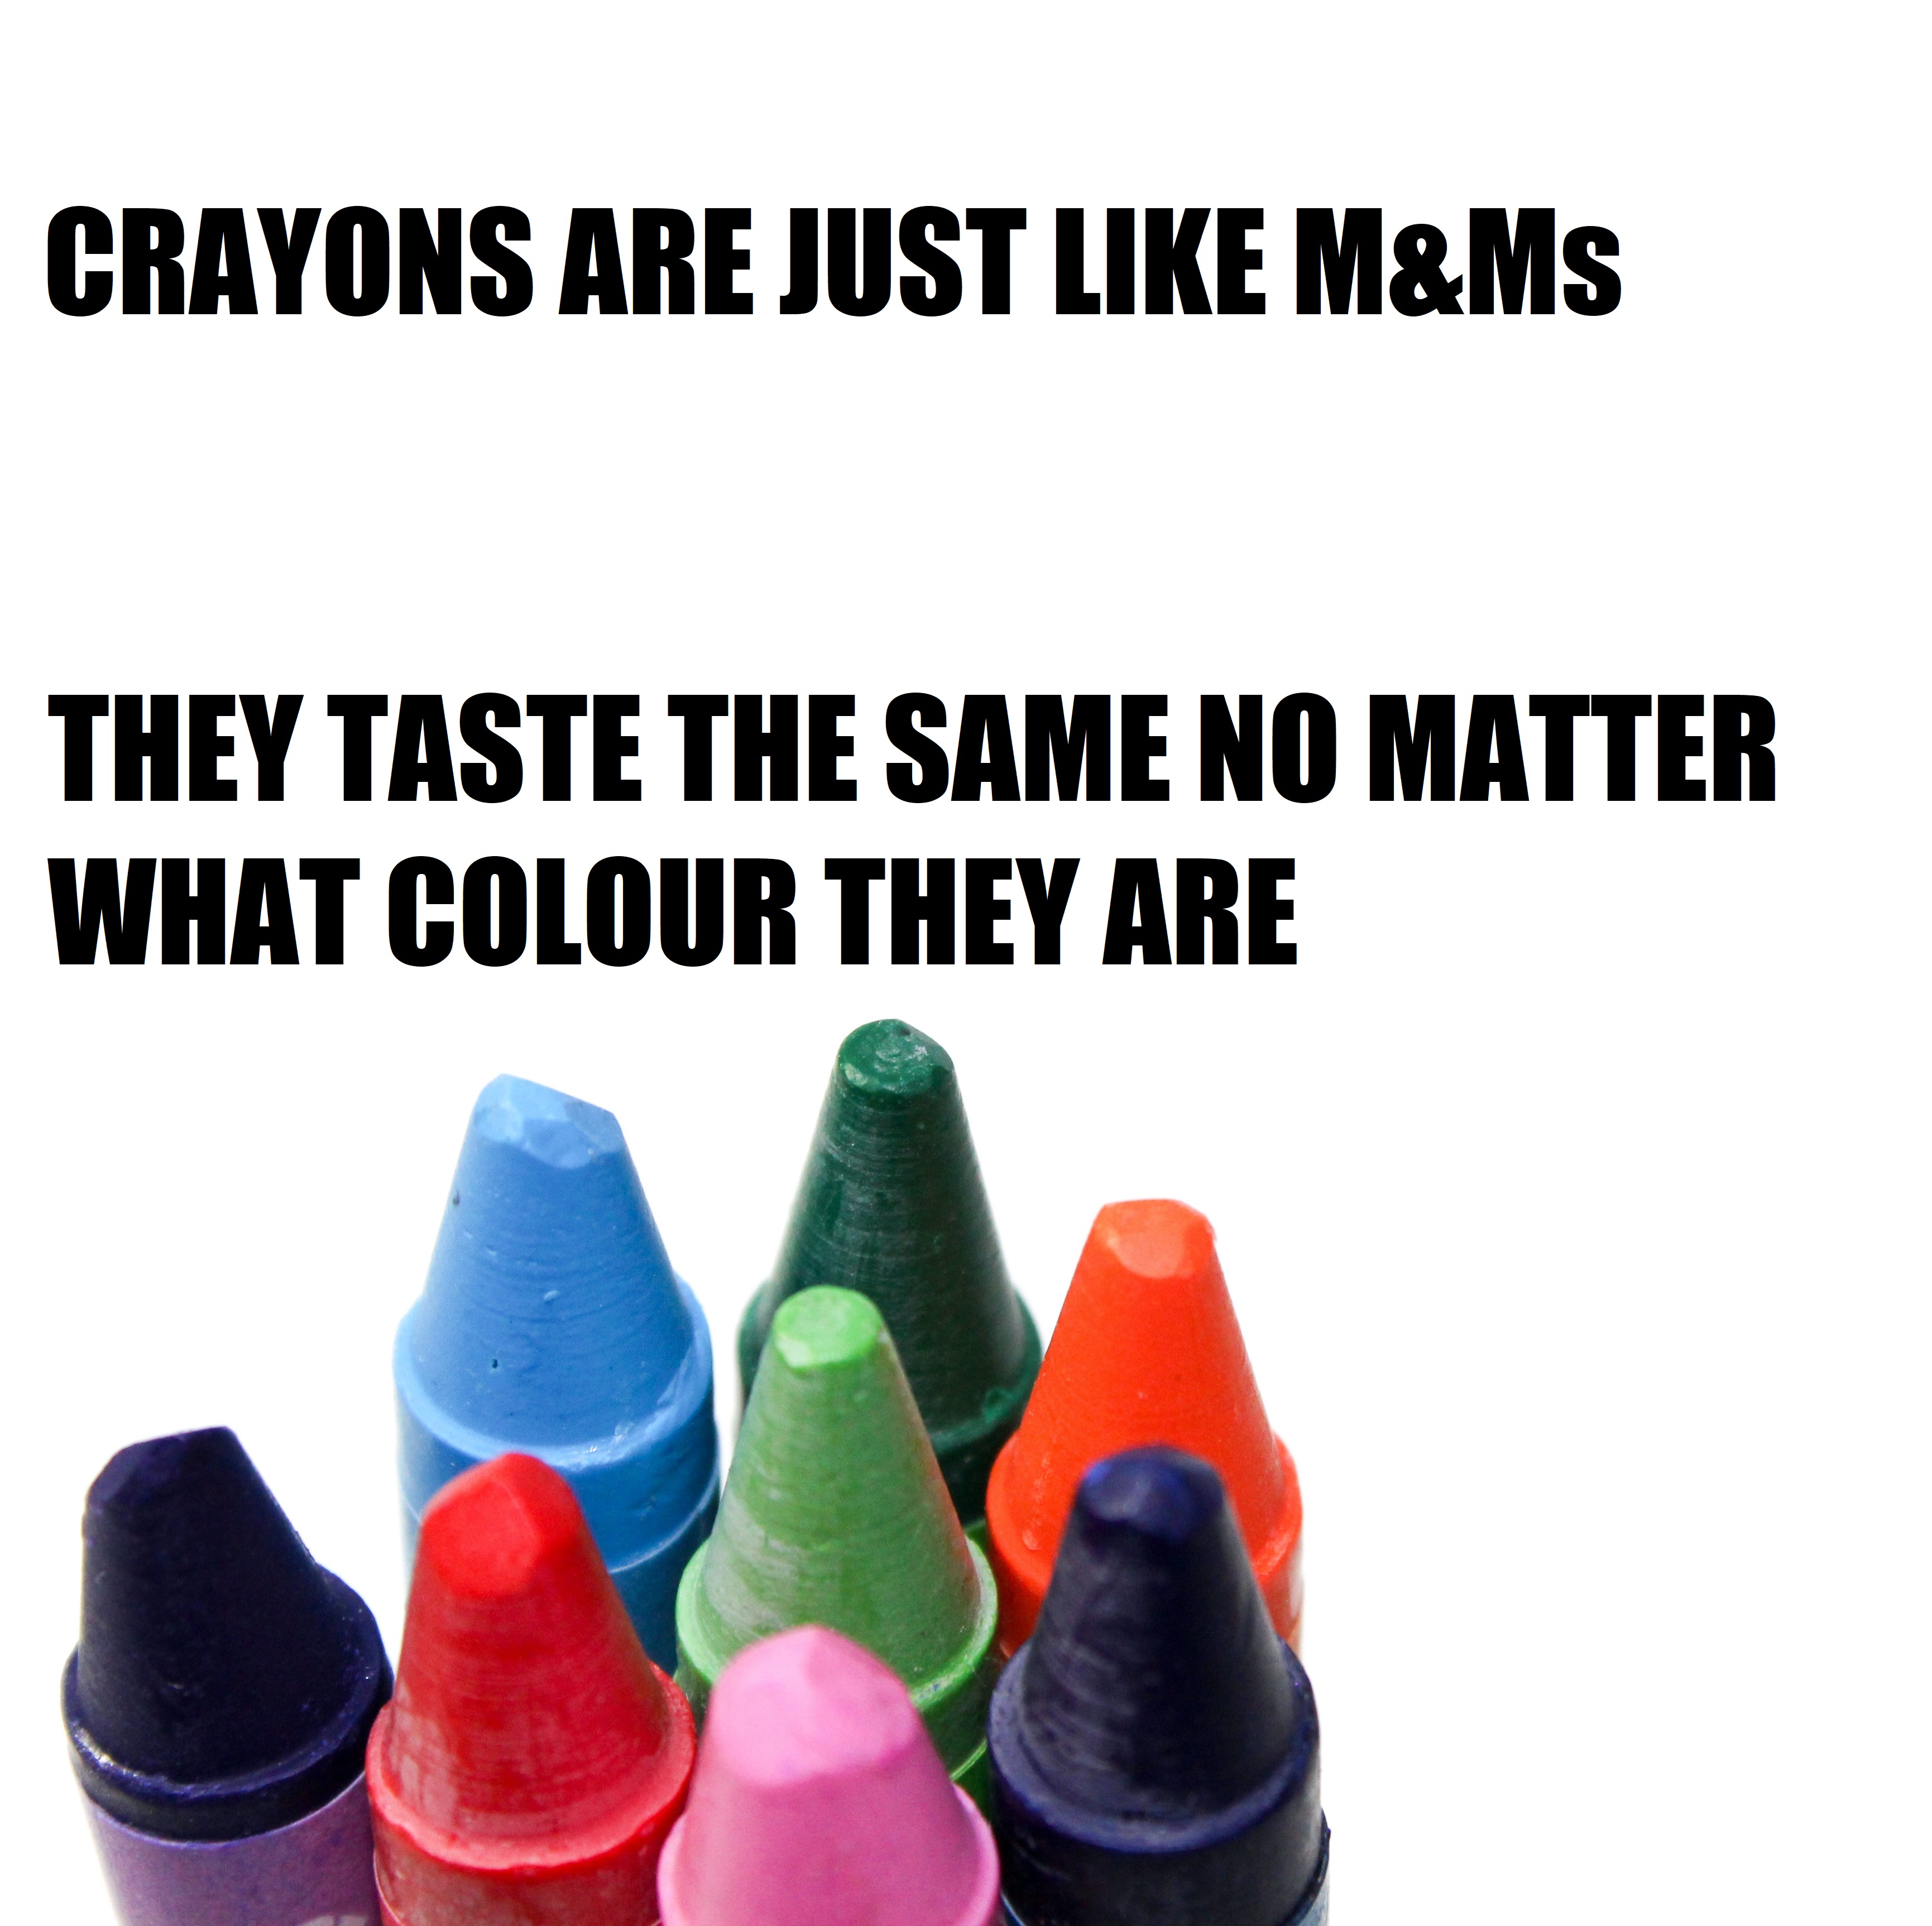 Crayon jokes and puns